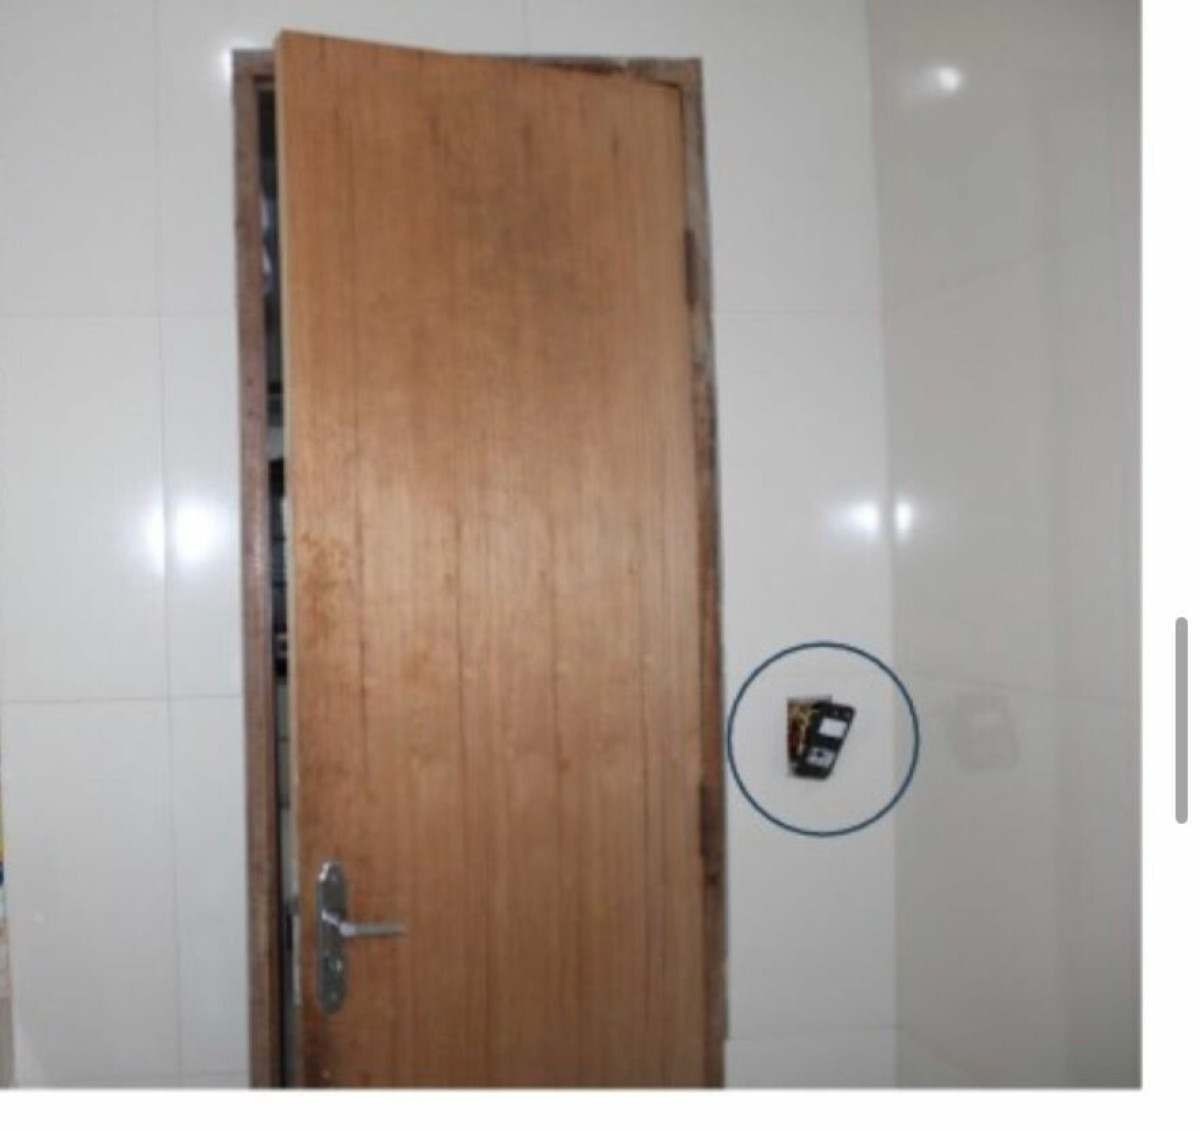 Homem coloca câmera escondida em tomada de banheiro